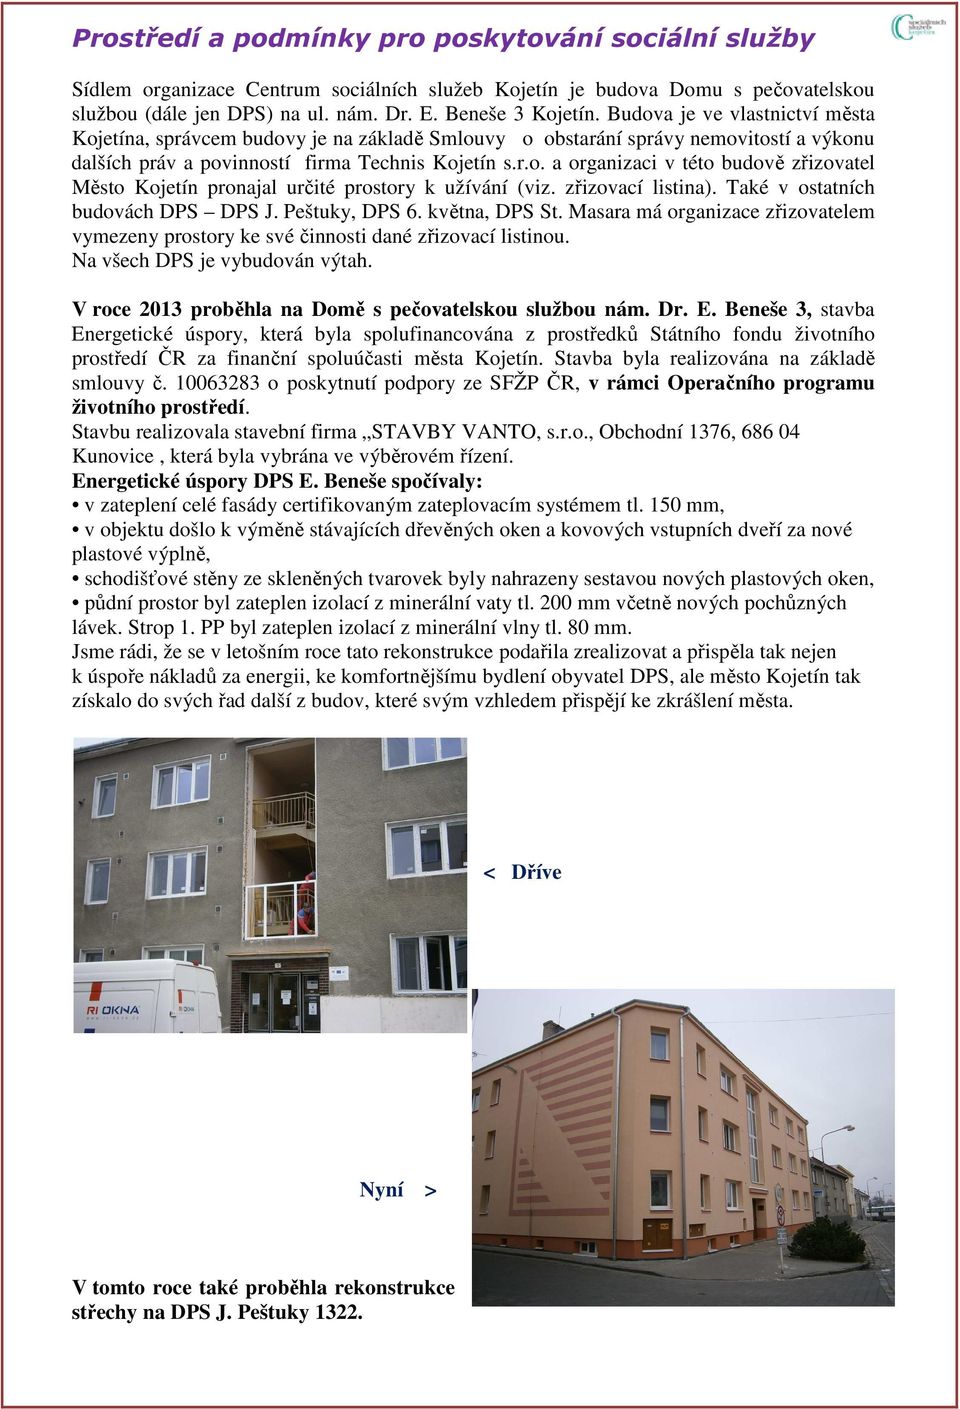 zřizovací listina). Také v ostatních budovách DPS DPS J. Peštuky, DPS 6. května, DPS St. Masara má organizace zřizovatelem vymezeny prostory ke své činnosti dané zřizovací listinou.